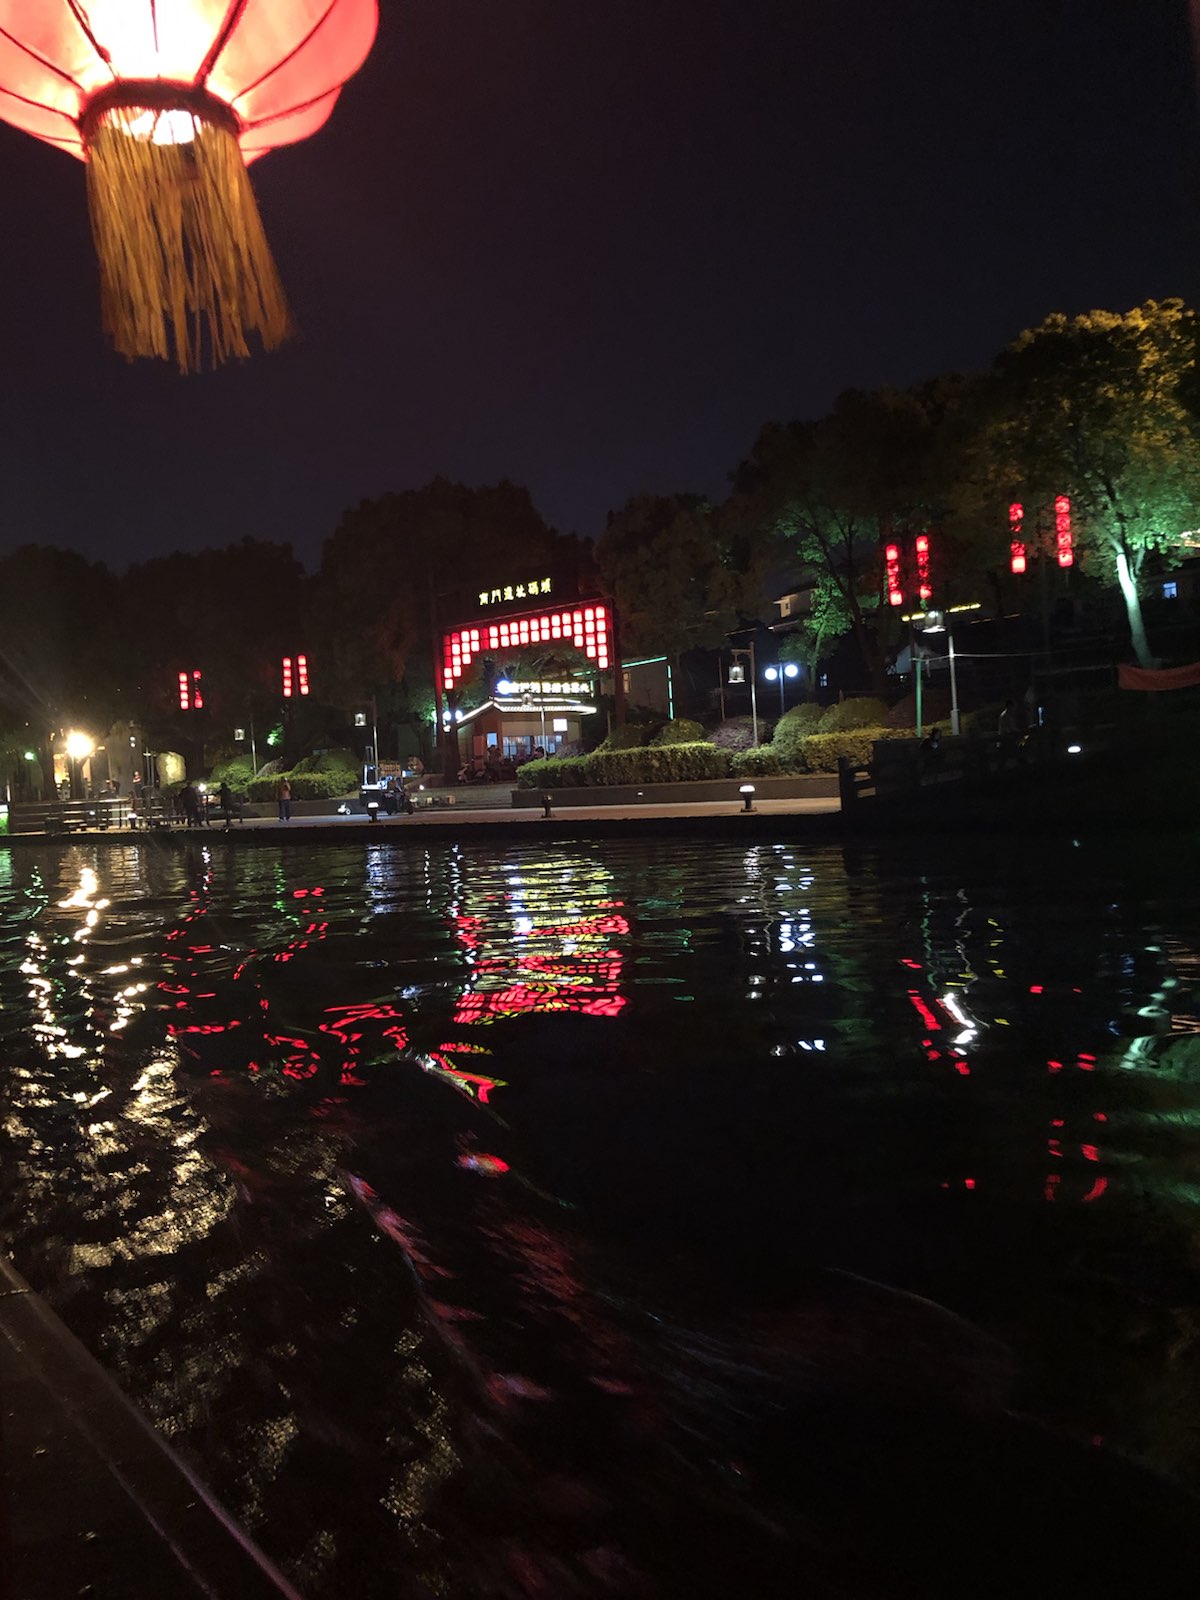 古运河夜游感觉一般，感受不到古城的底蕴，运河上的桥历史感没有。